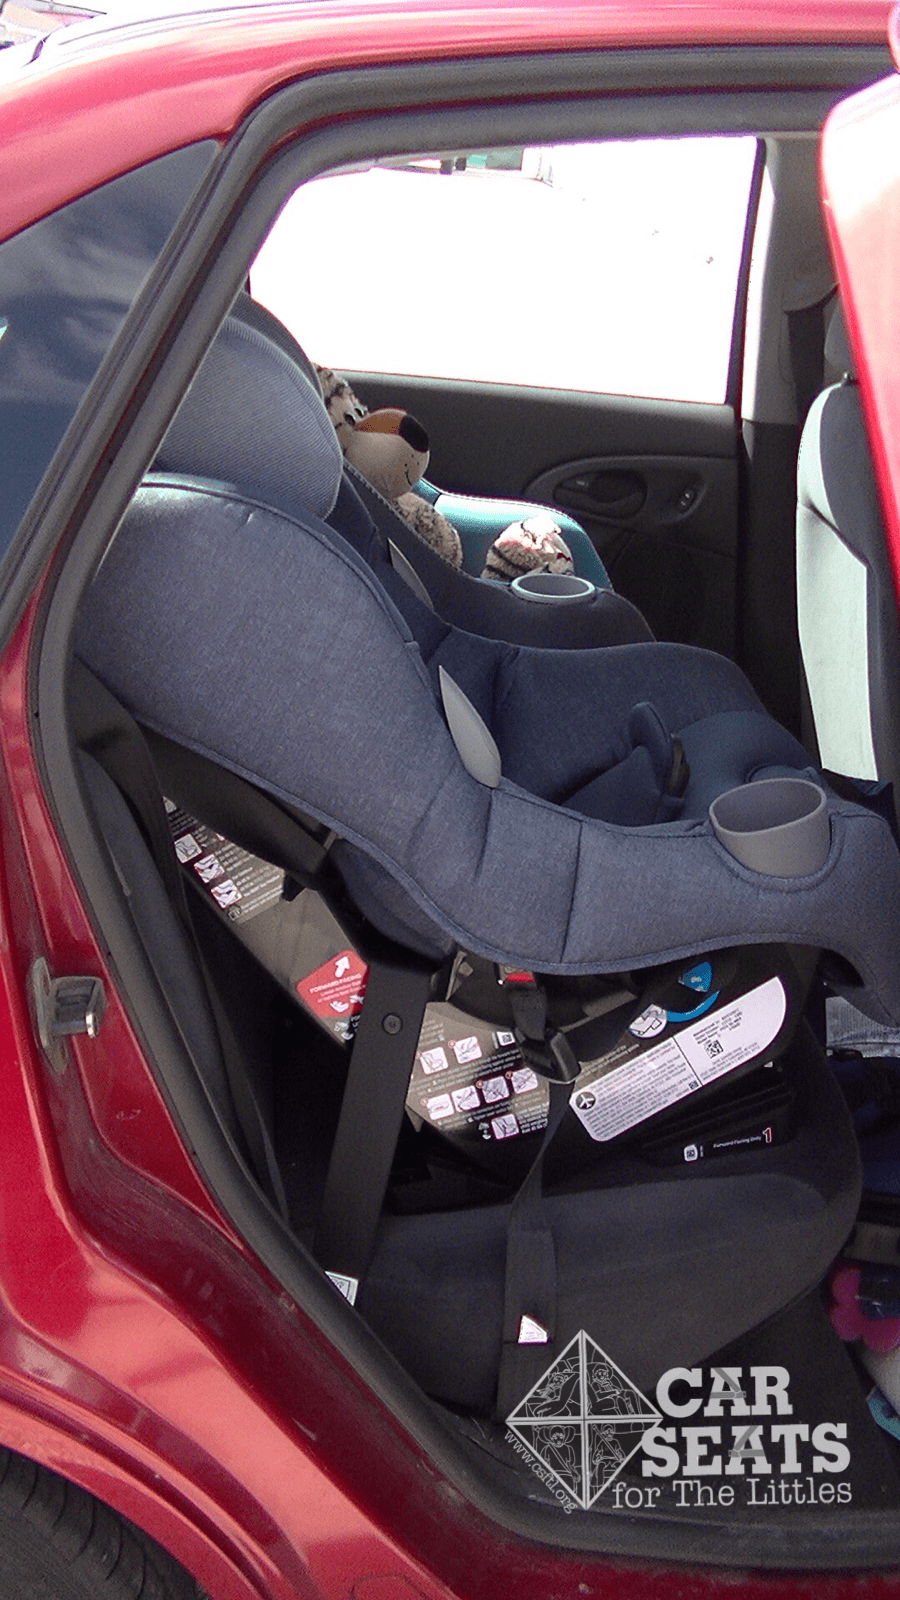 maxi cosi rear facing car seat weight limit